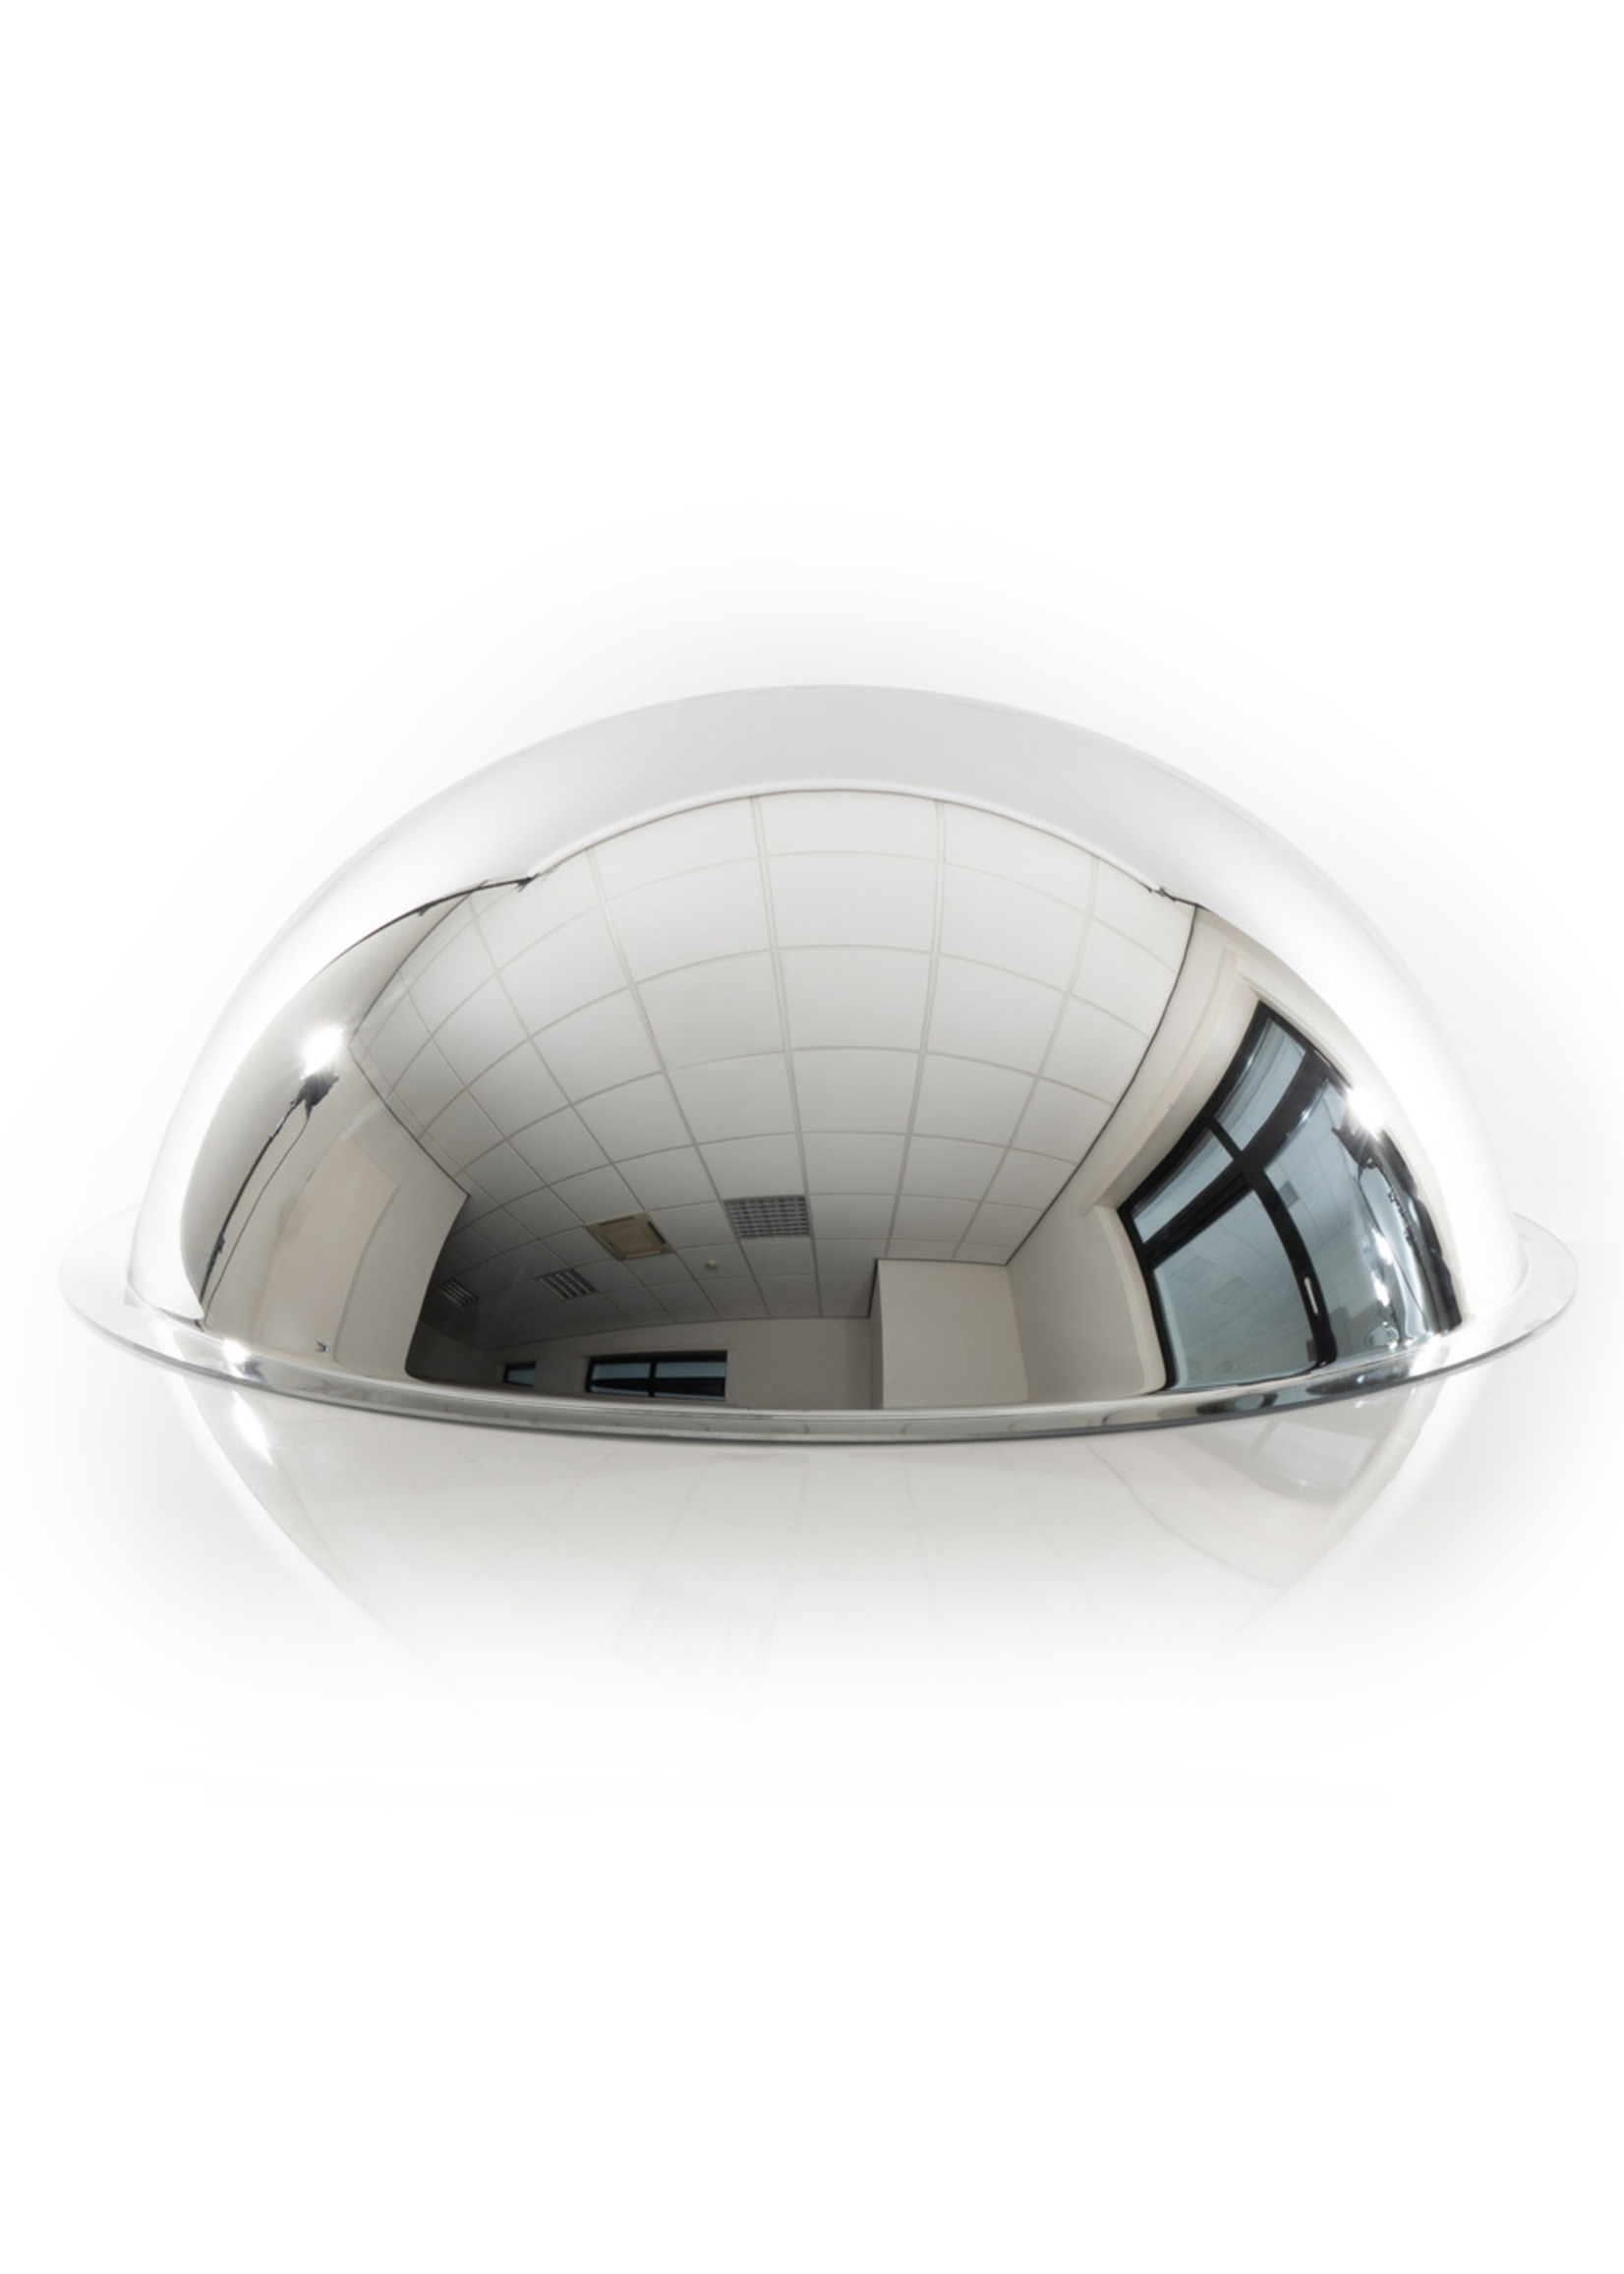 RI-TRAFFIC Lager Panoramaspiegel 360 Grad | Kugelspiegel | Konvexer Spiegel, Ladenspiegel